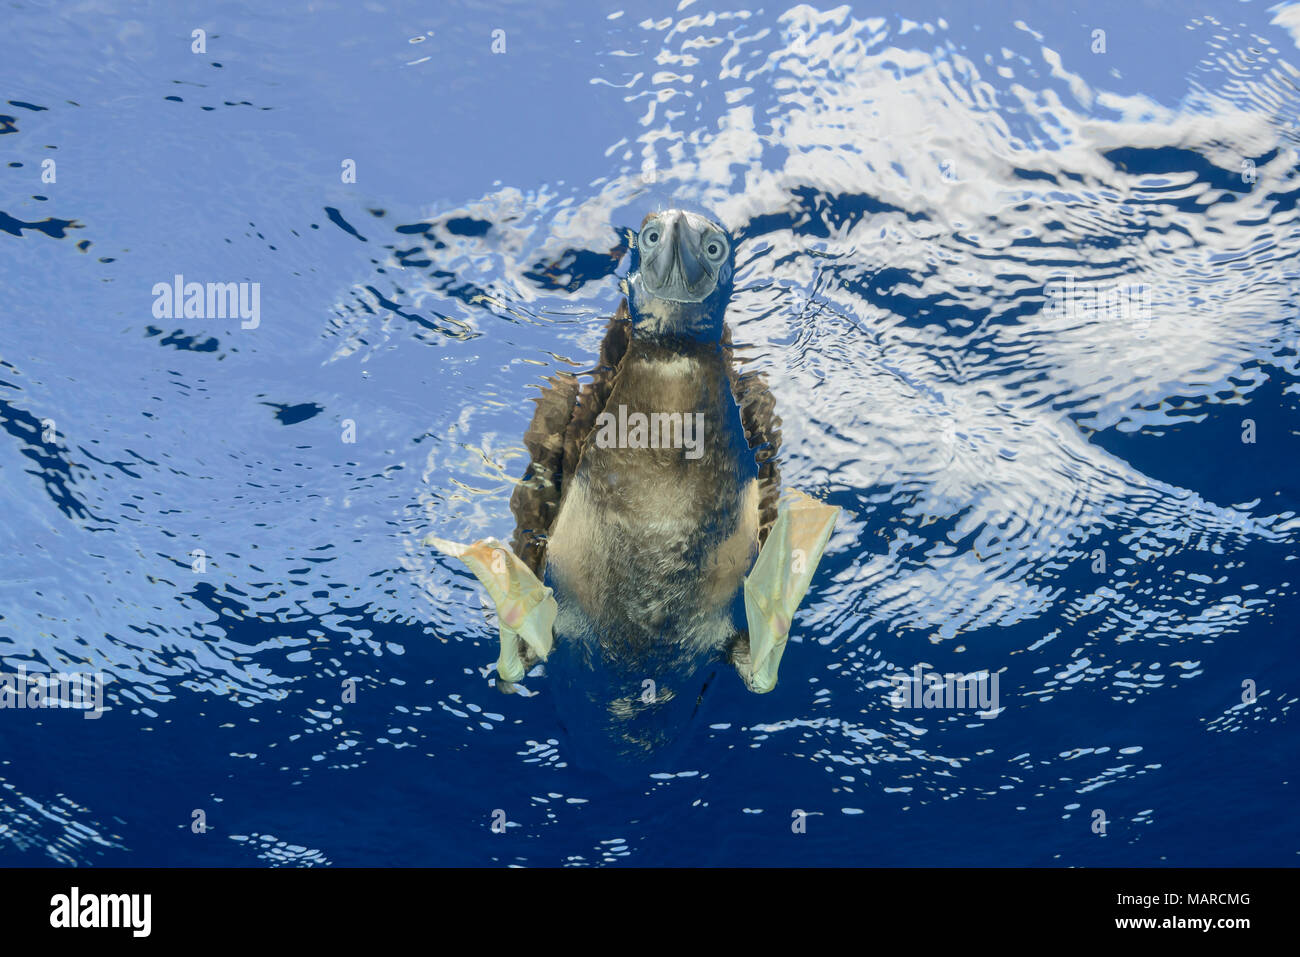 Fou brun (Sula leucogaster) à poissons sous l'eau tout en nageant. L'île Cocos, le Costa Rica, l'Océan Pacifique Banque D'Images